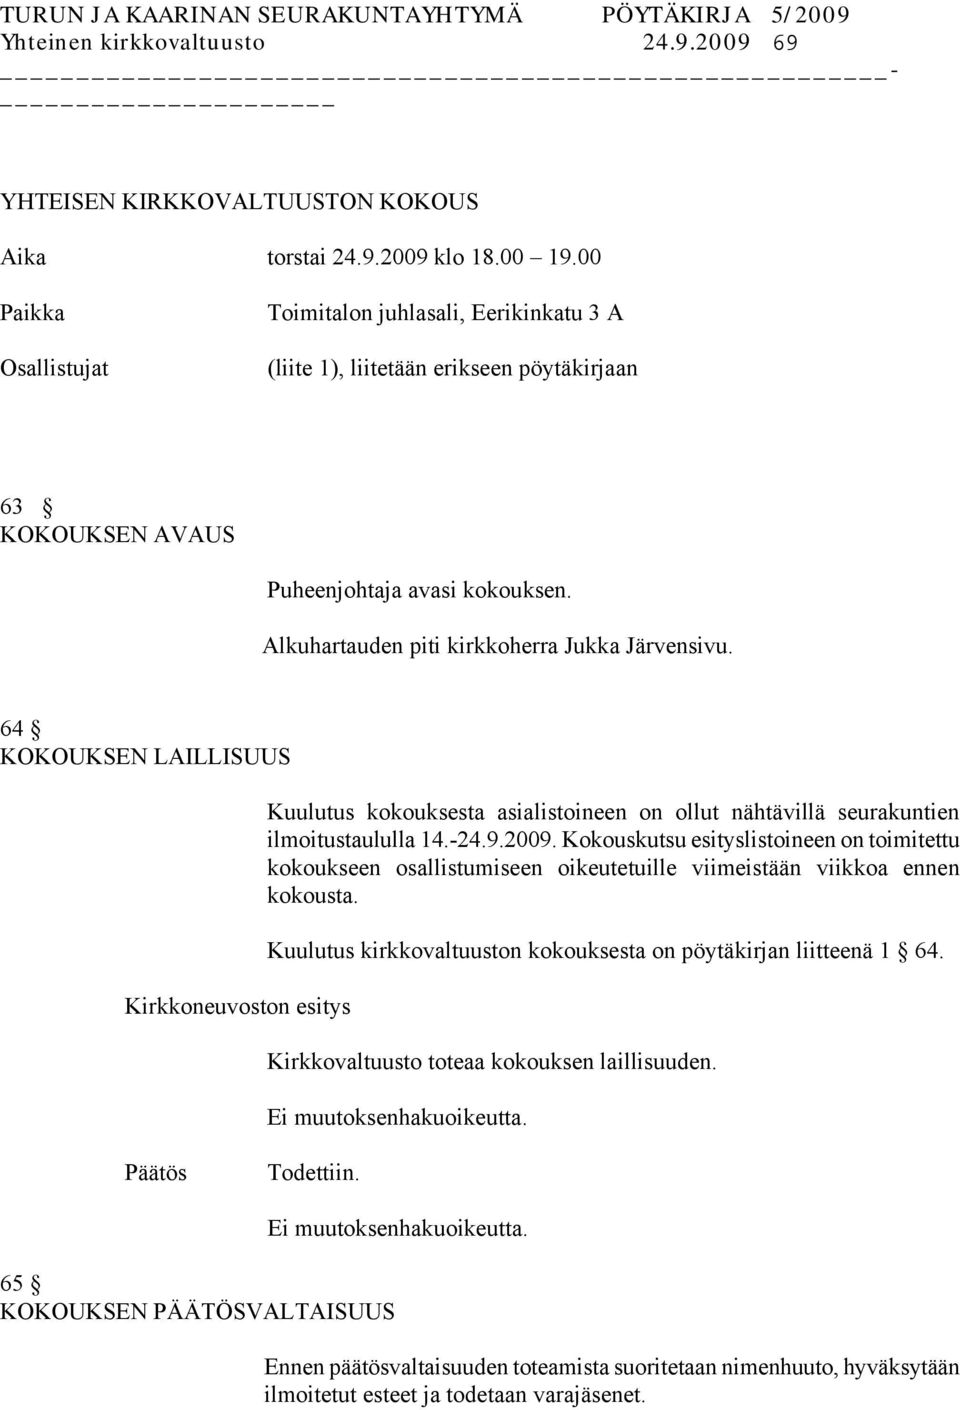 Alkuhartauden piti kirkkoherra Jukka Järvensivu. 64 KOKOUKSEN LAILLISUUS Kuulutus kokouksesta asialistoineen on ollut nähtävillä seurakuntien ilmoitustaululla 14.-24.9.2009.